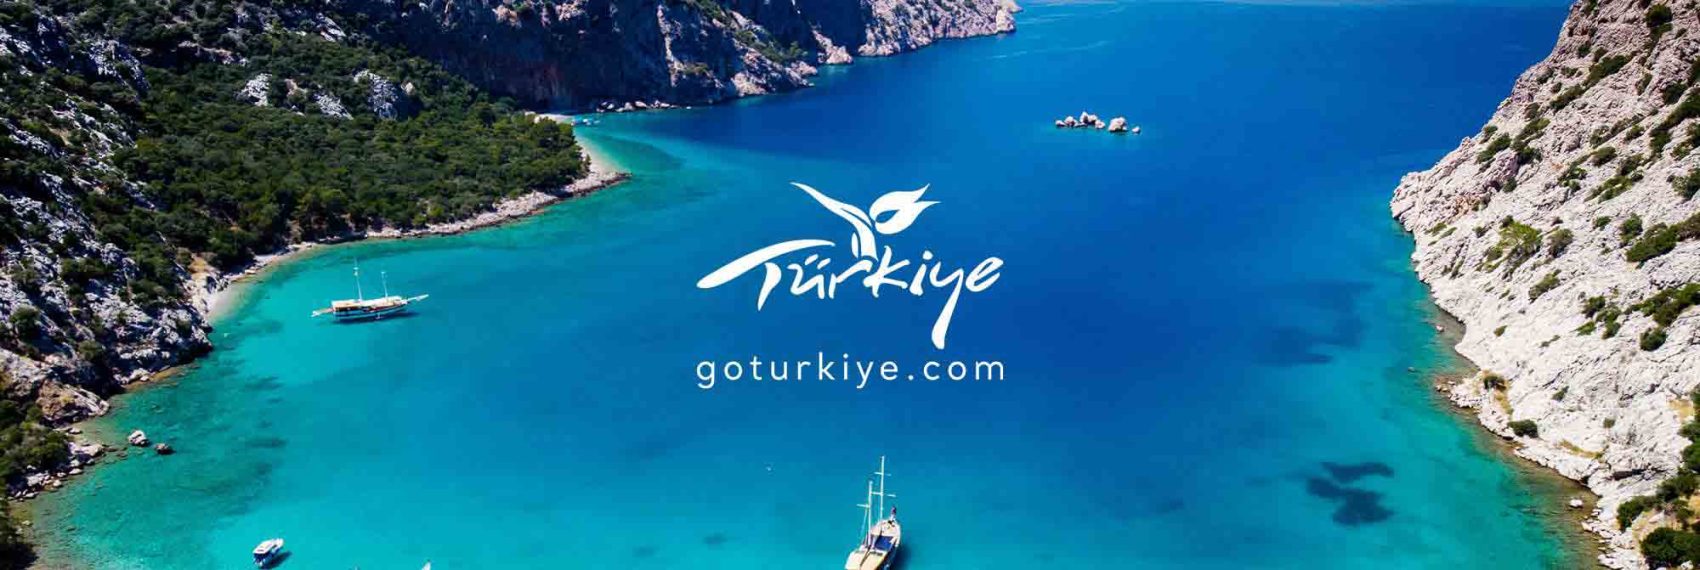 GO-Turkiye